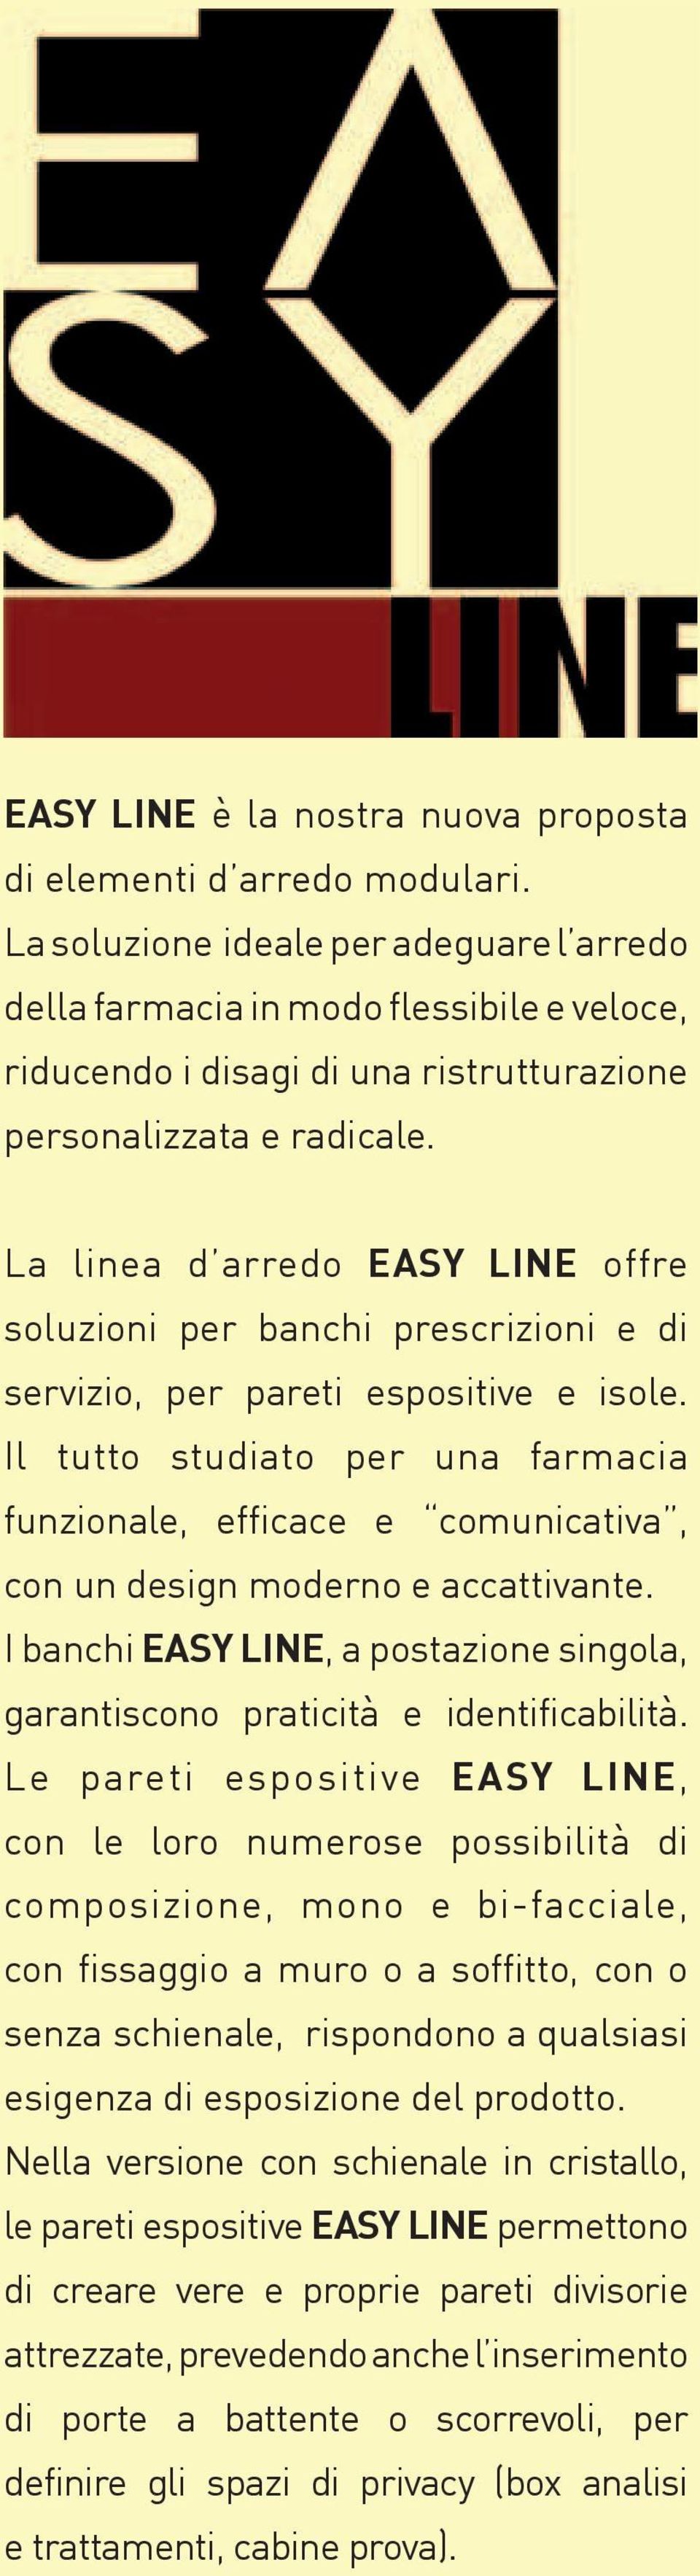 La linea d arredo EASY LINE offre soluzioni per banchi prescrizioni e di servizio, per pareti espositive e isole.